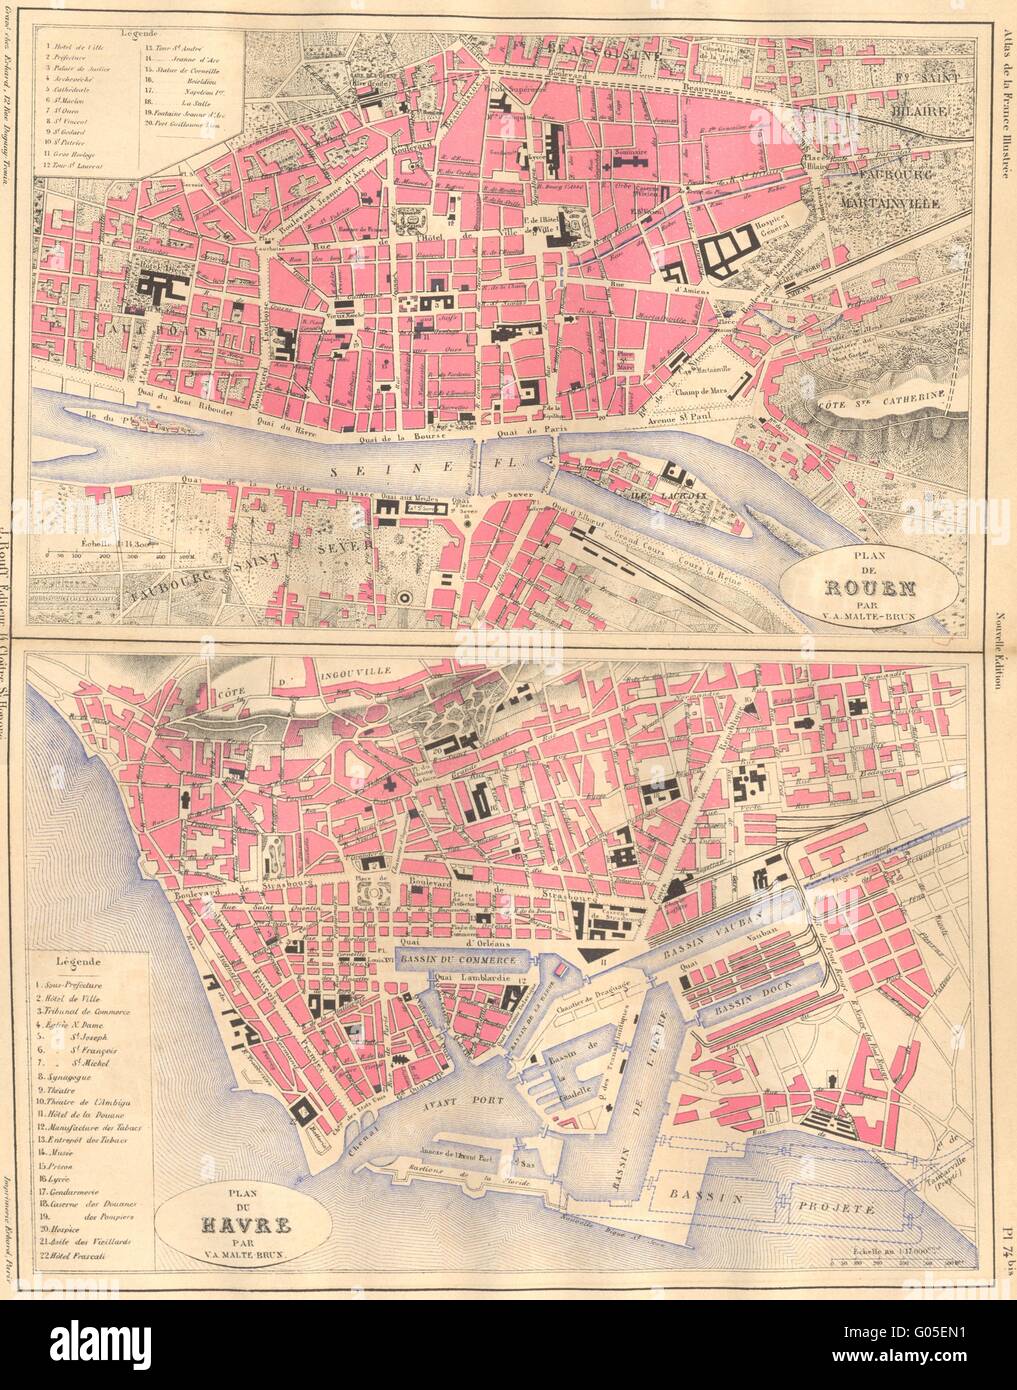 SEINE-MARITIME: Plan de Rouen; Le Havre, 1883 antique map Stock Photo